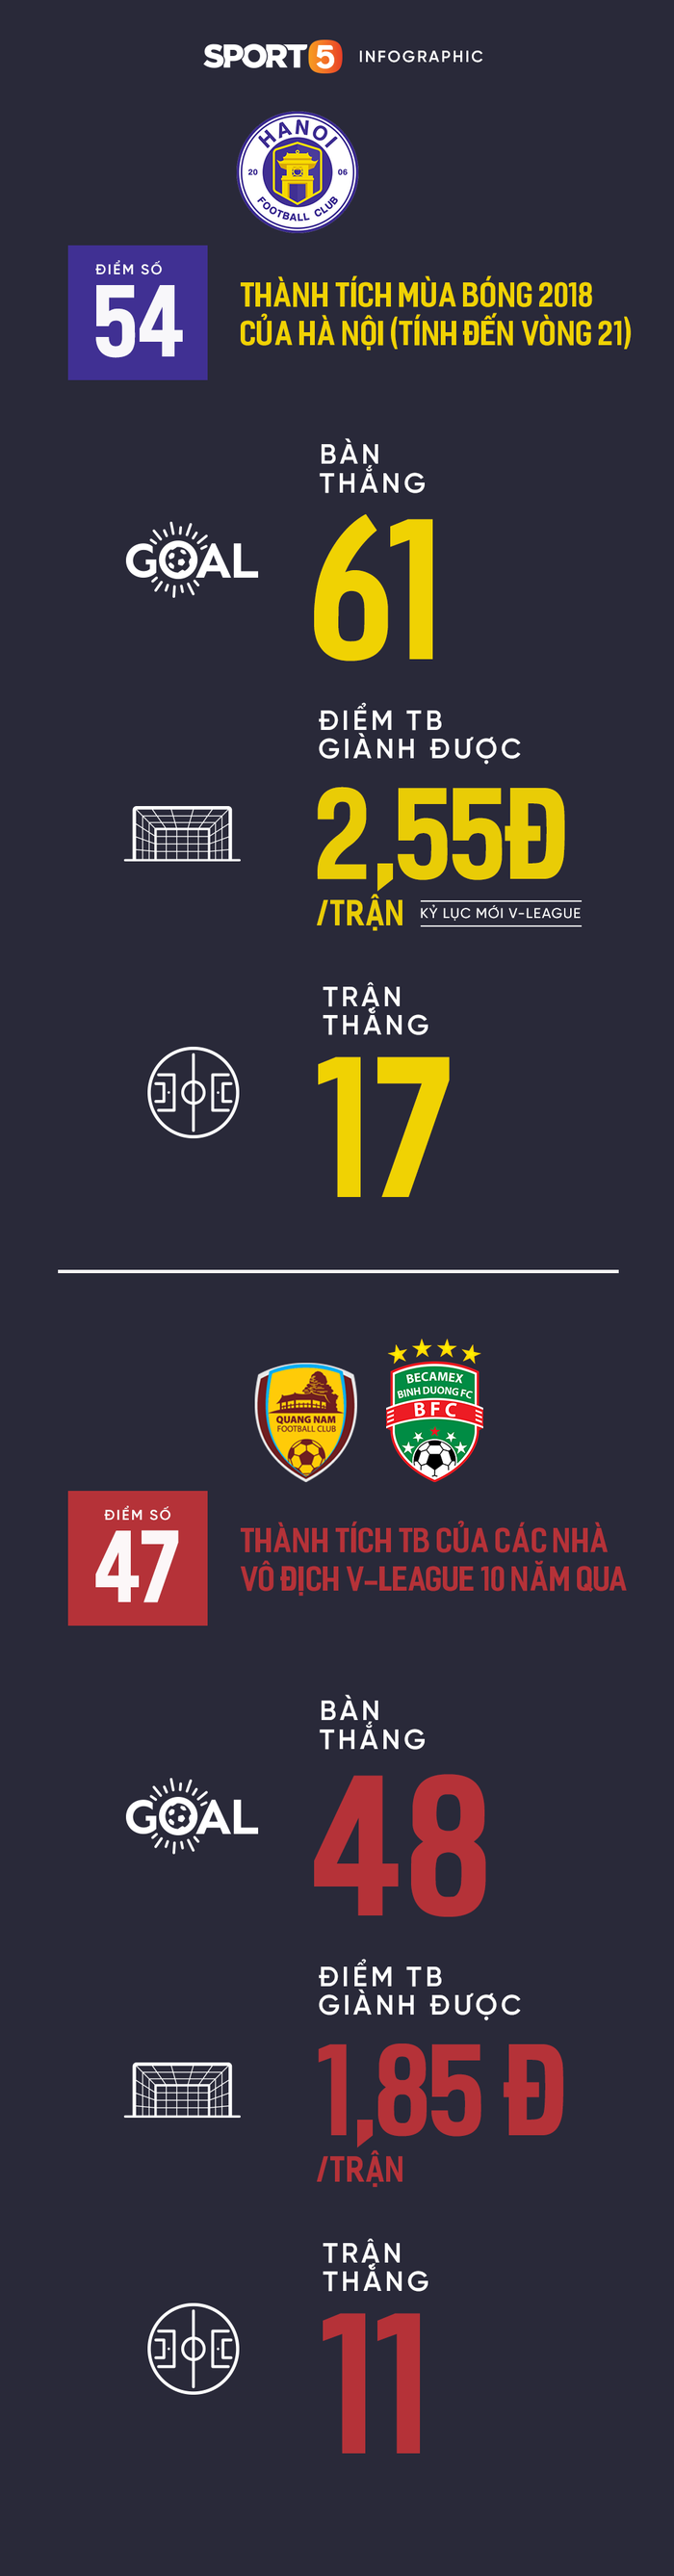 Hà Nội vô địch V-League 2018: Đội bóng thủ đô ghi dấu ấn lịch sử - Ảnh 3.